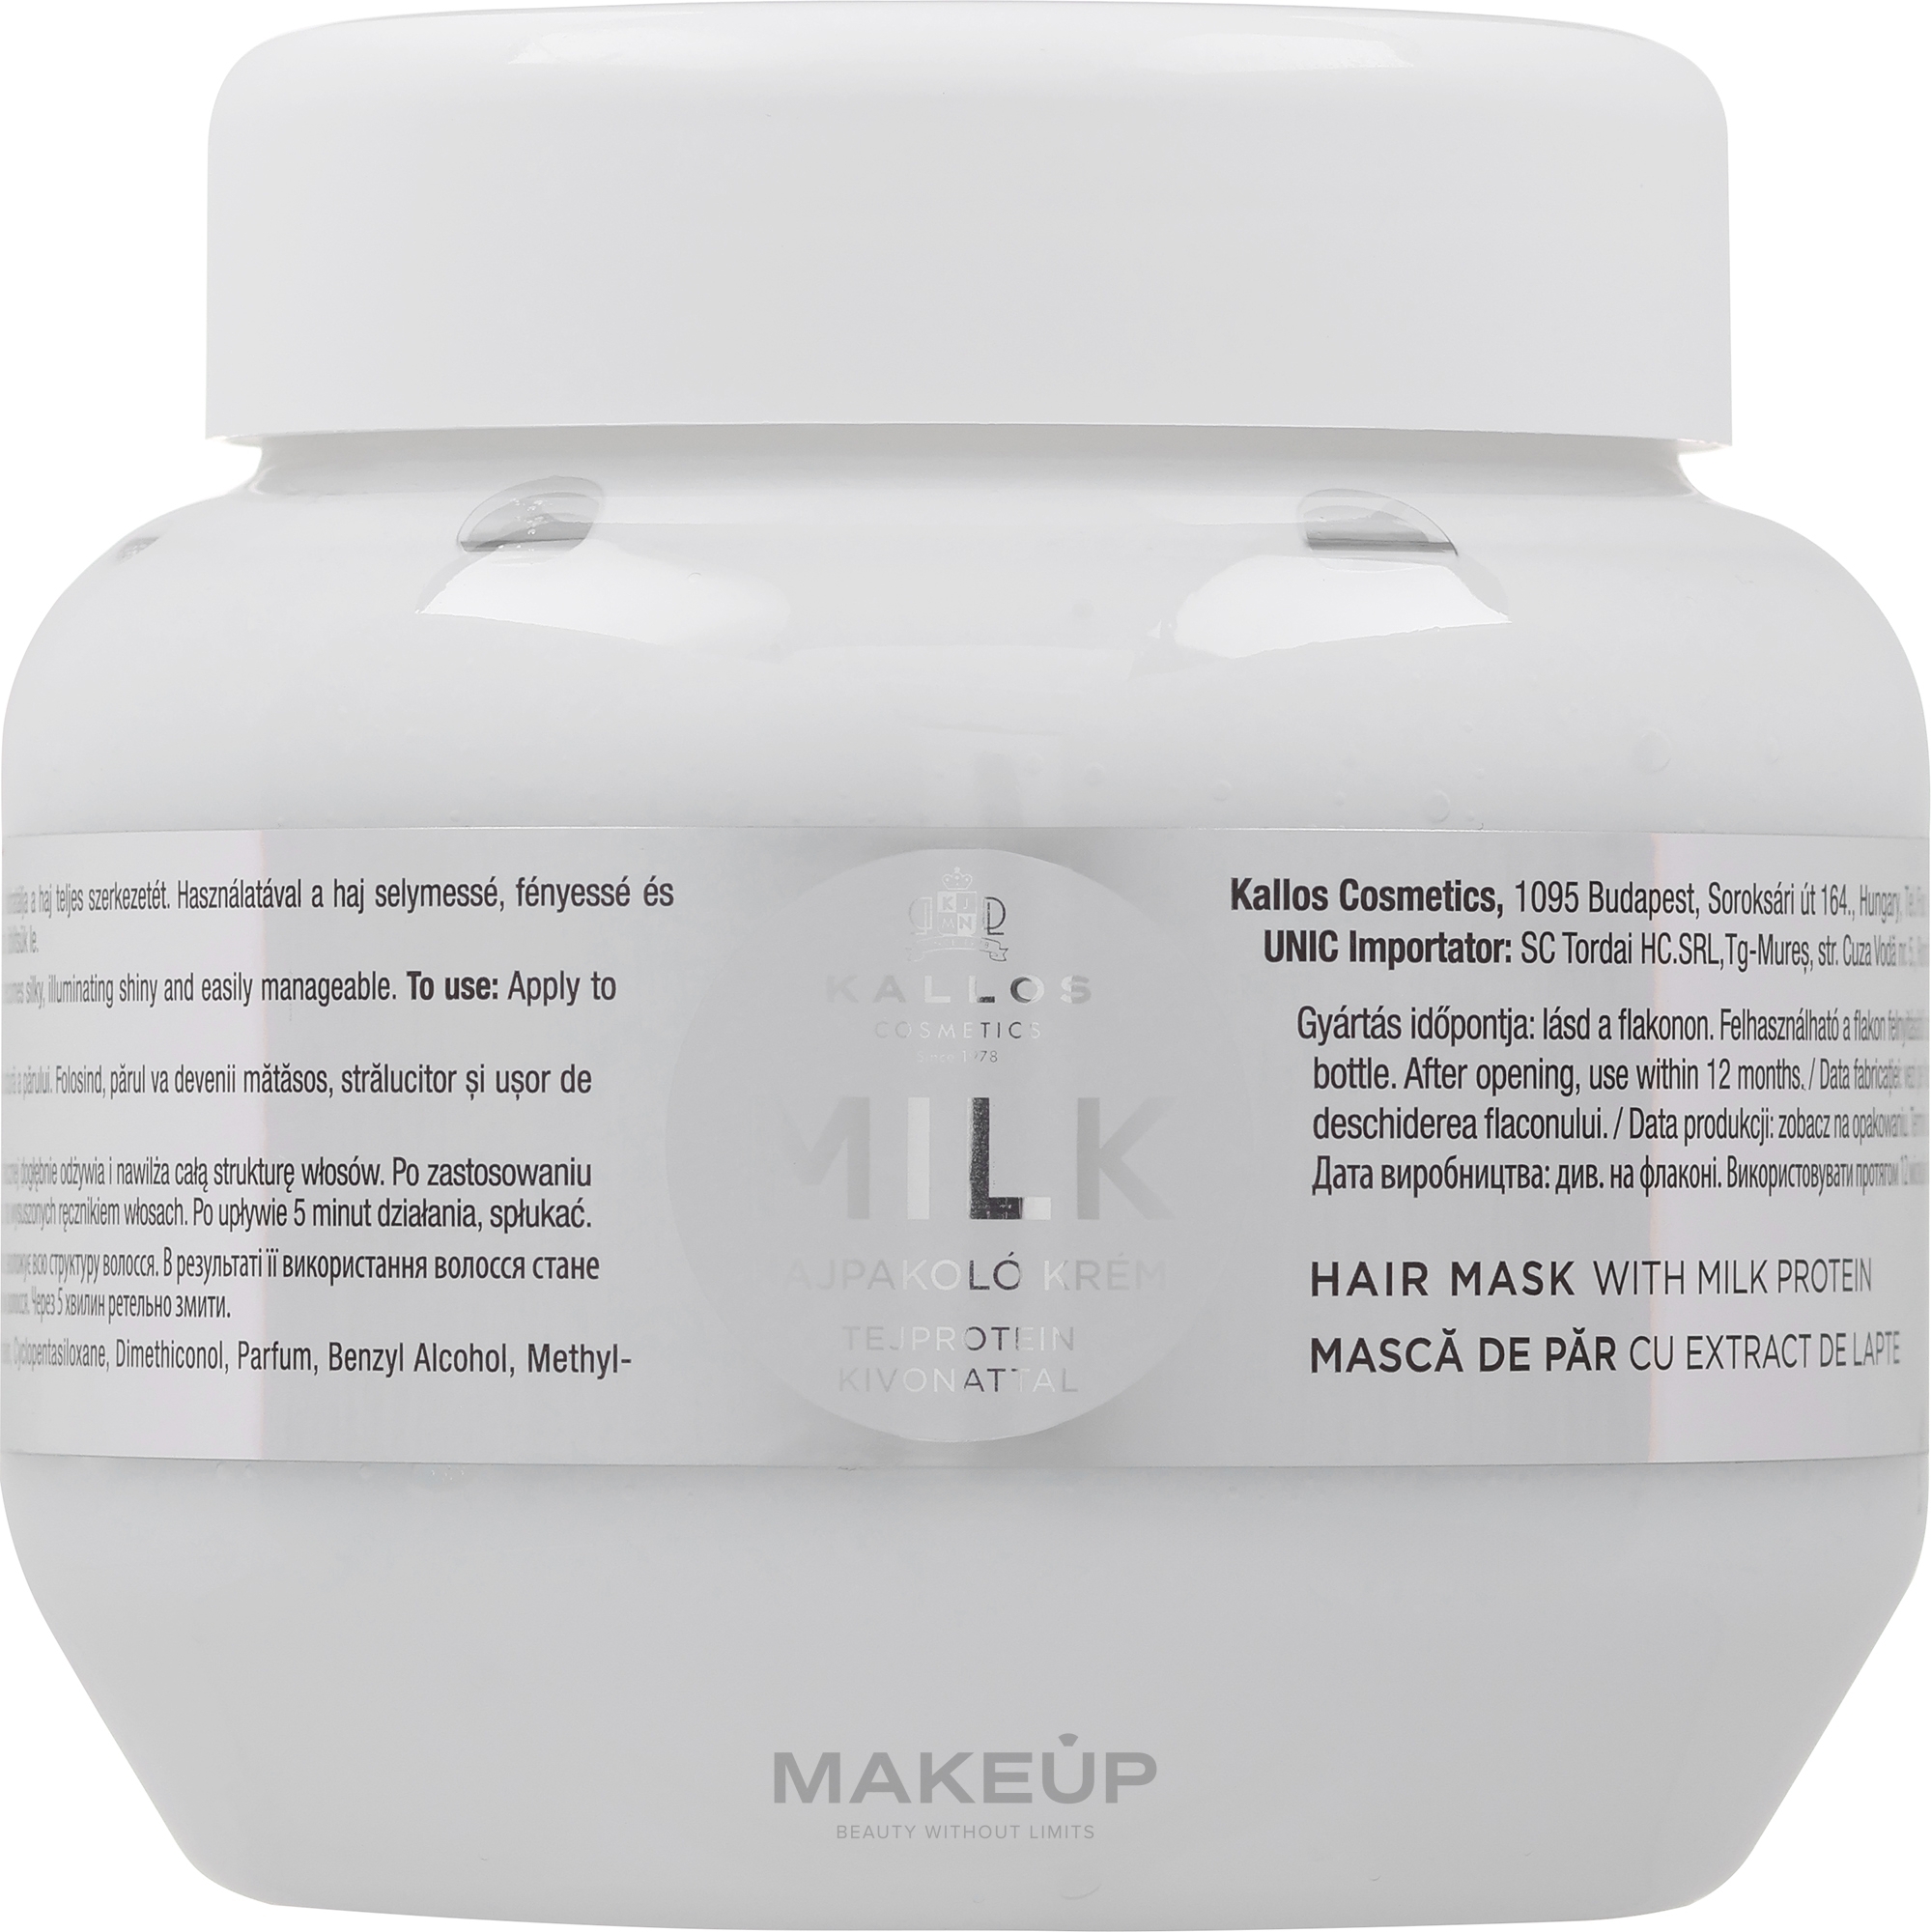 Kremowa maska do włosów z proteinami mleka - Kallos Cosmetics Hair Mask With Milk Protein — Zdjęcie 275 ml